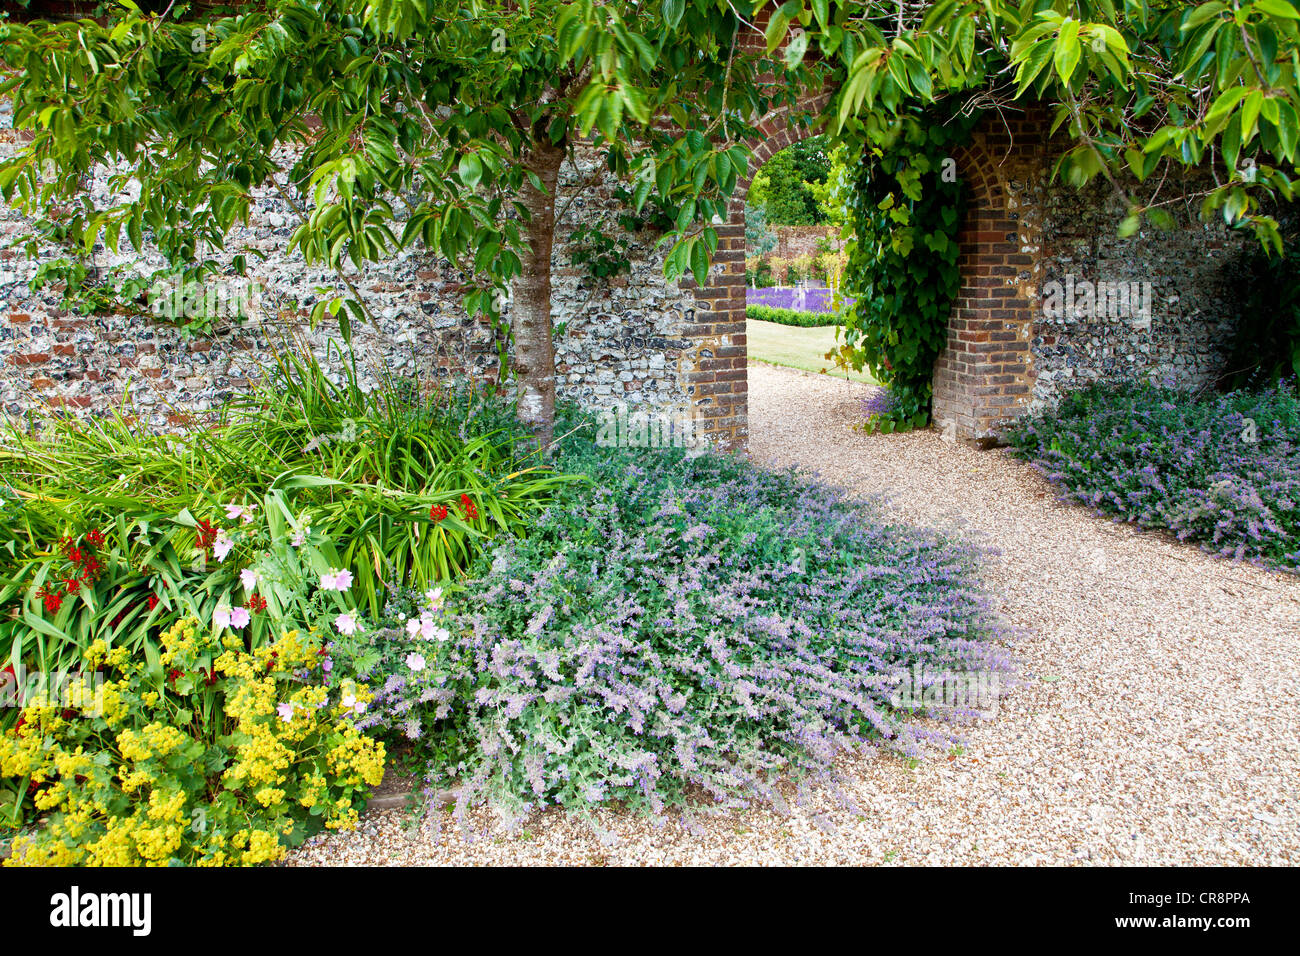 Nepitella o Nepeta frontiere in un sentiero di ghiaia che conduce attraverso un arco in una parete in un paese di lingua inglese il giardino. Foto Stock